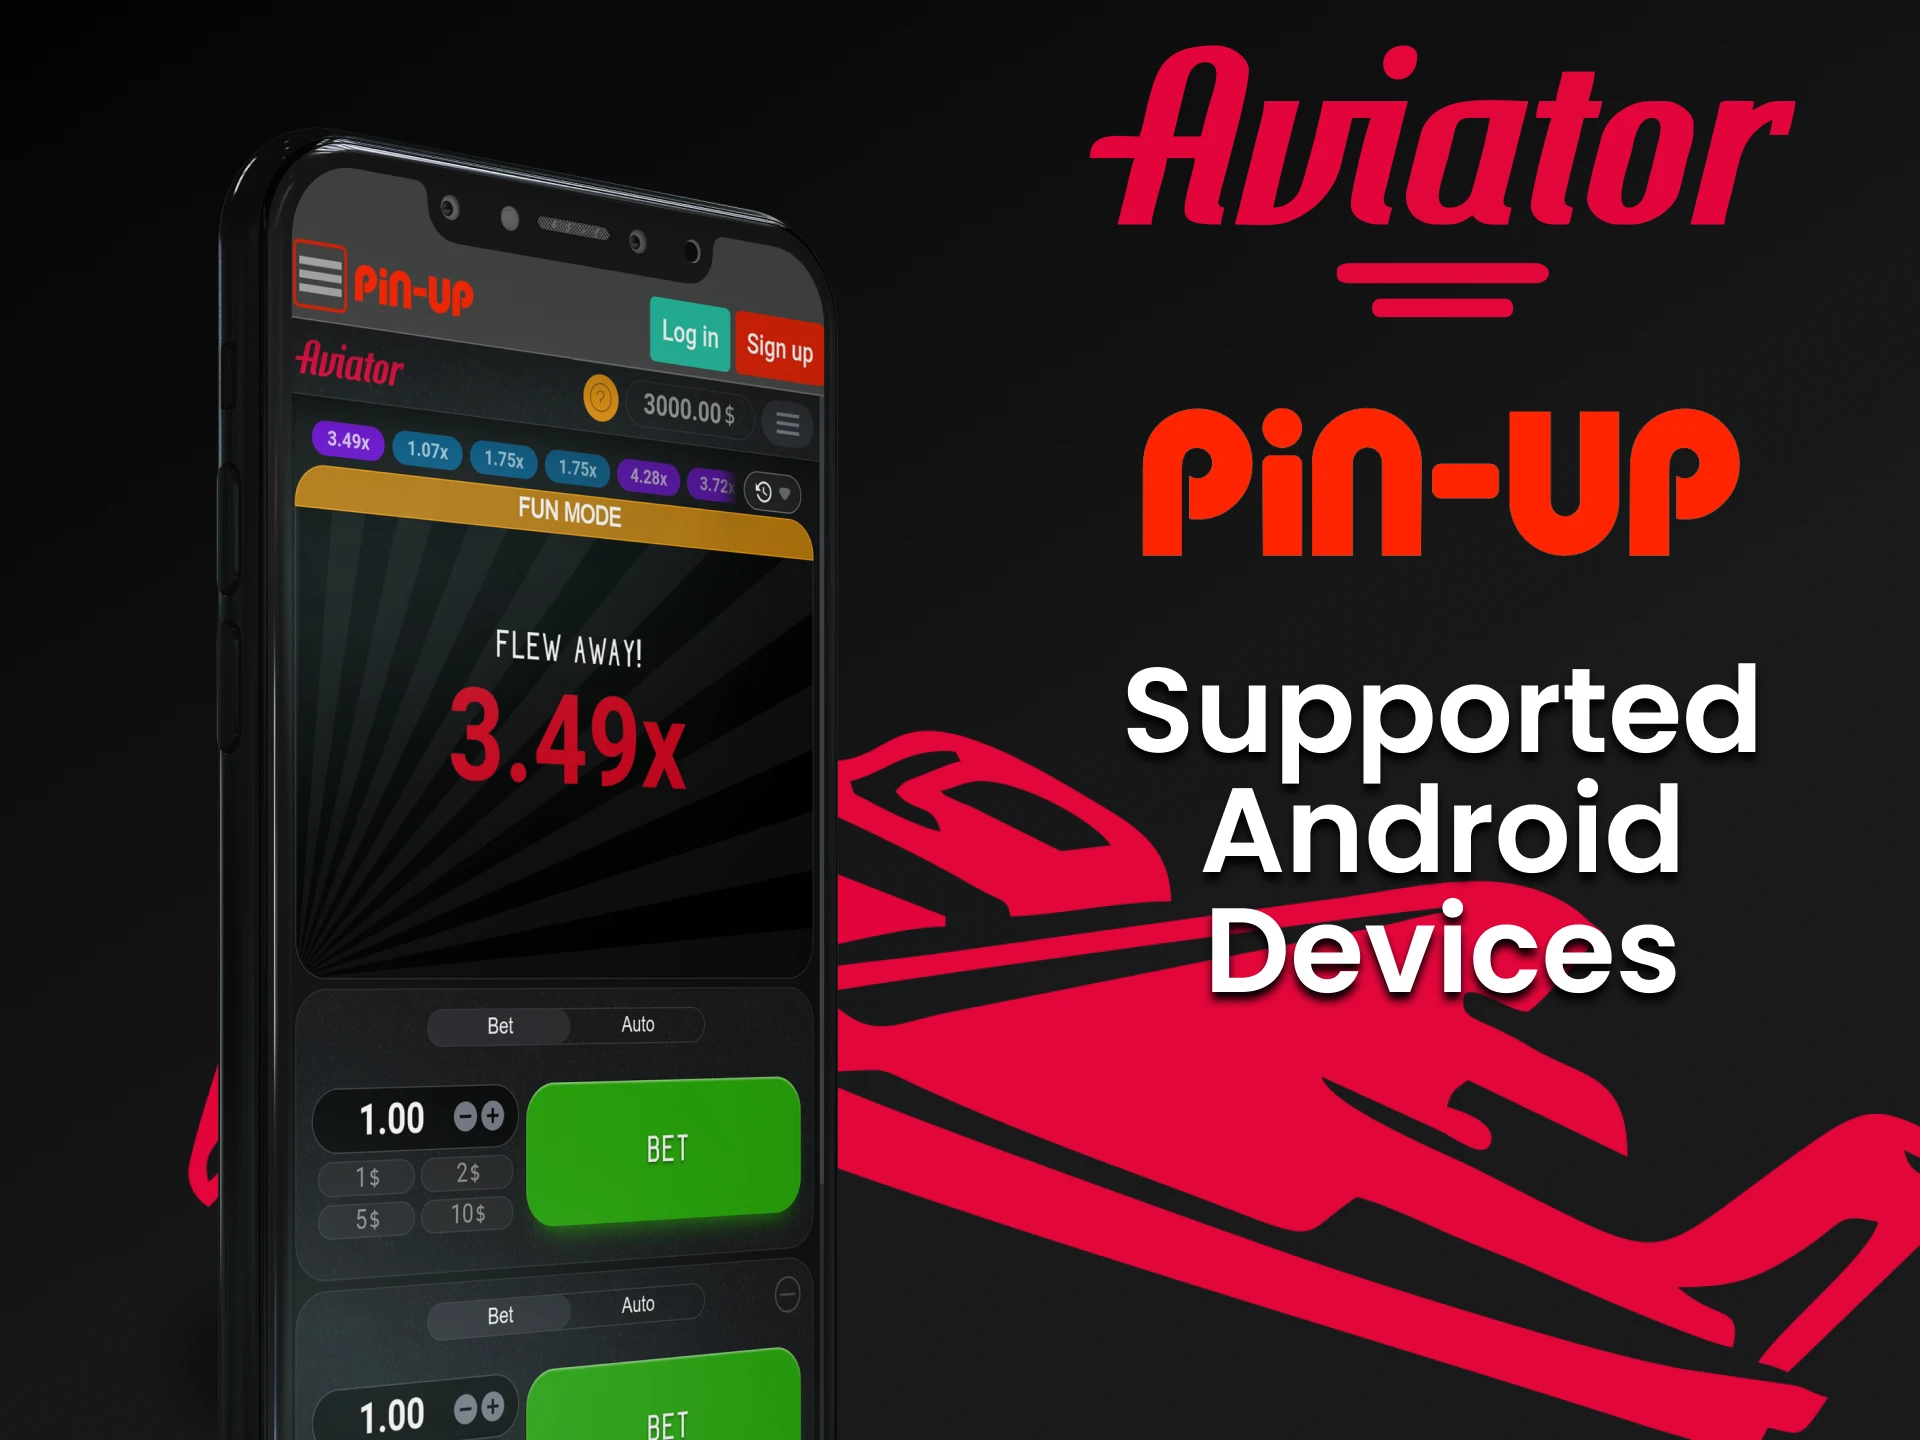 Reproduzir Aviator da Pin Up em dispositivos Android.